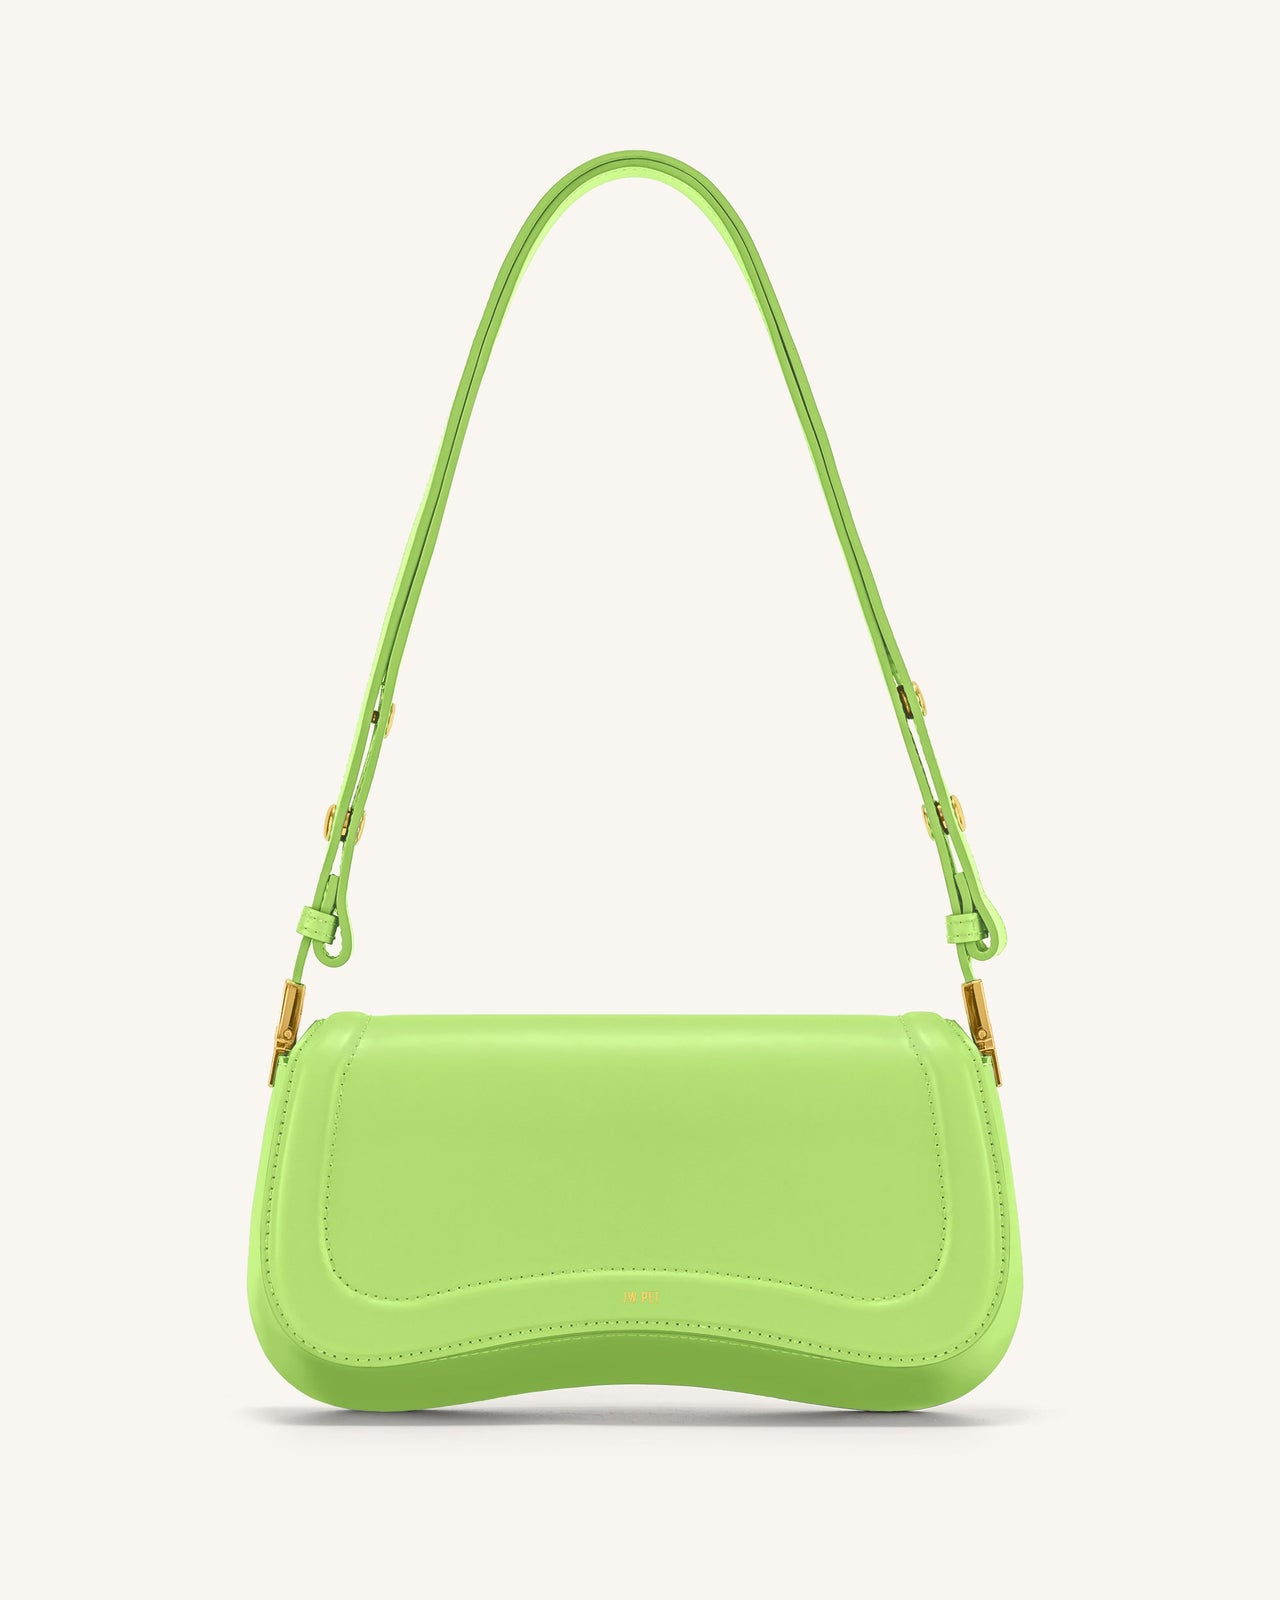 Joy Tasche - Limonengrün